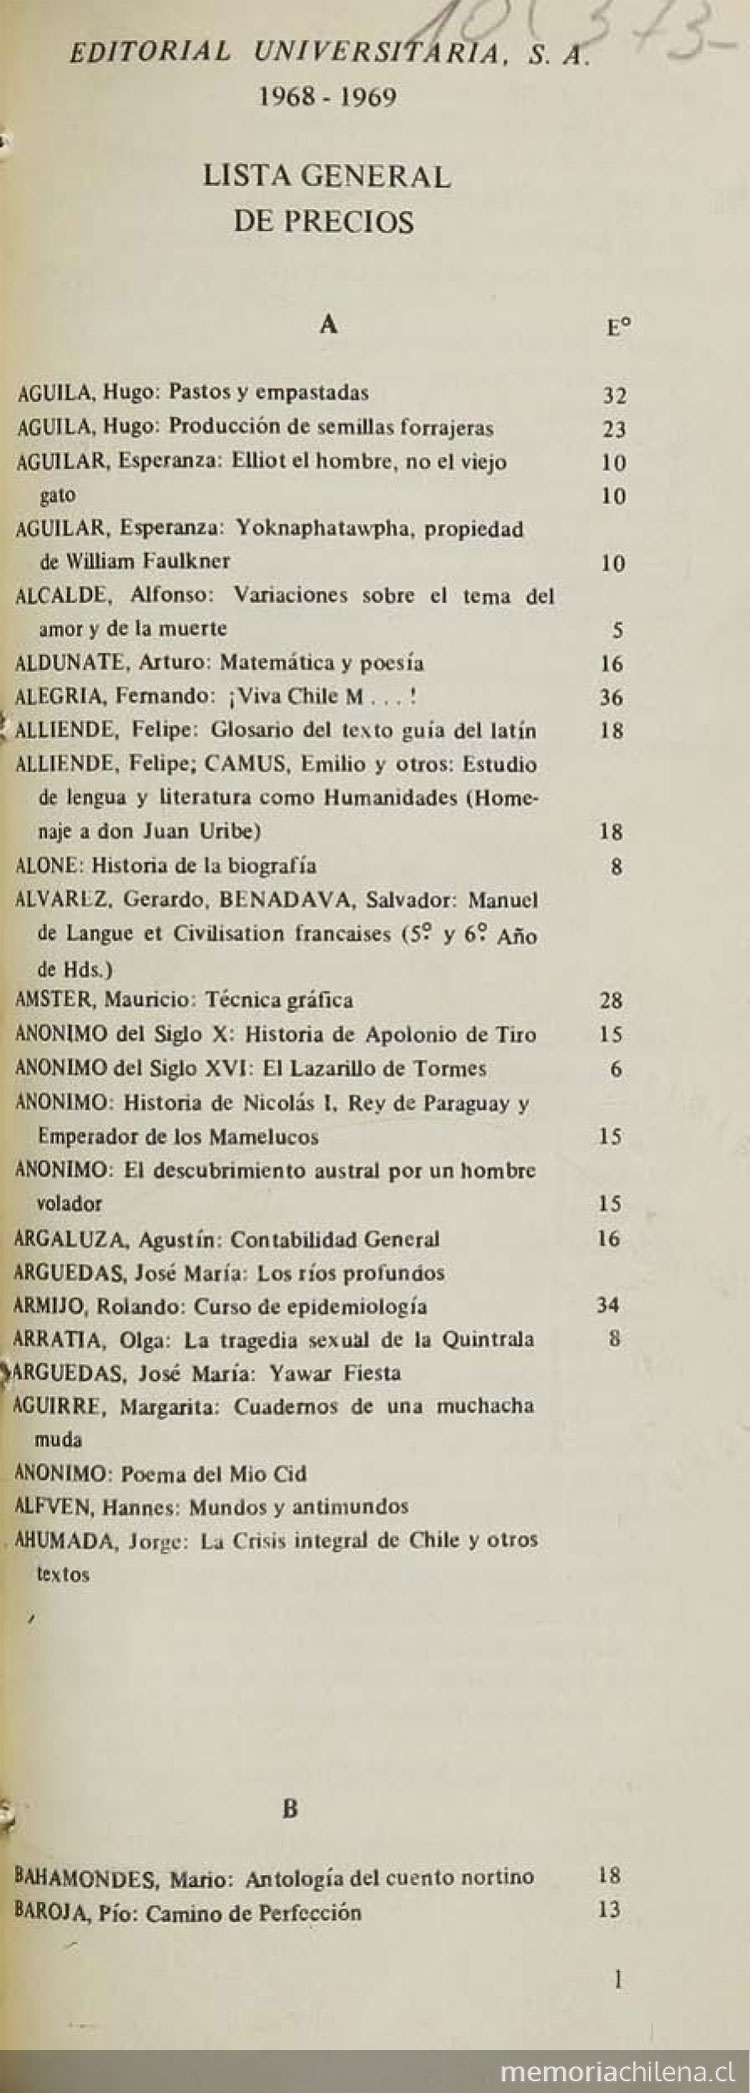  Editorial Universitaria :1968-1969 - "Lista General de precios"